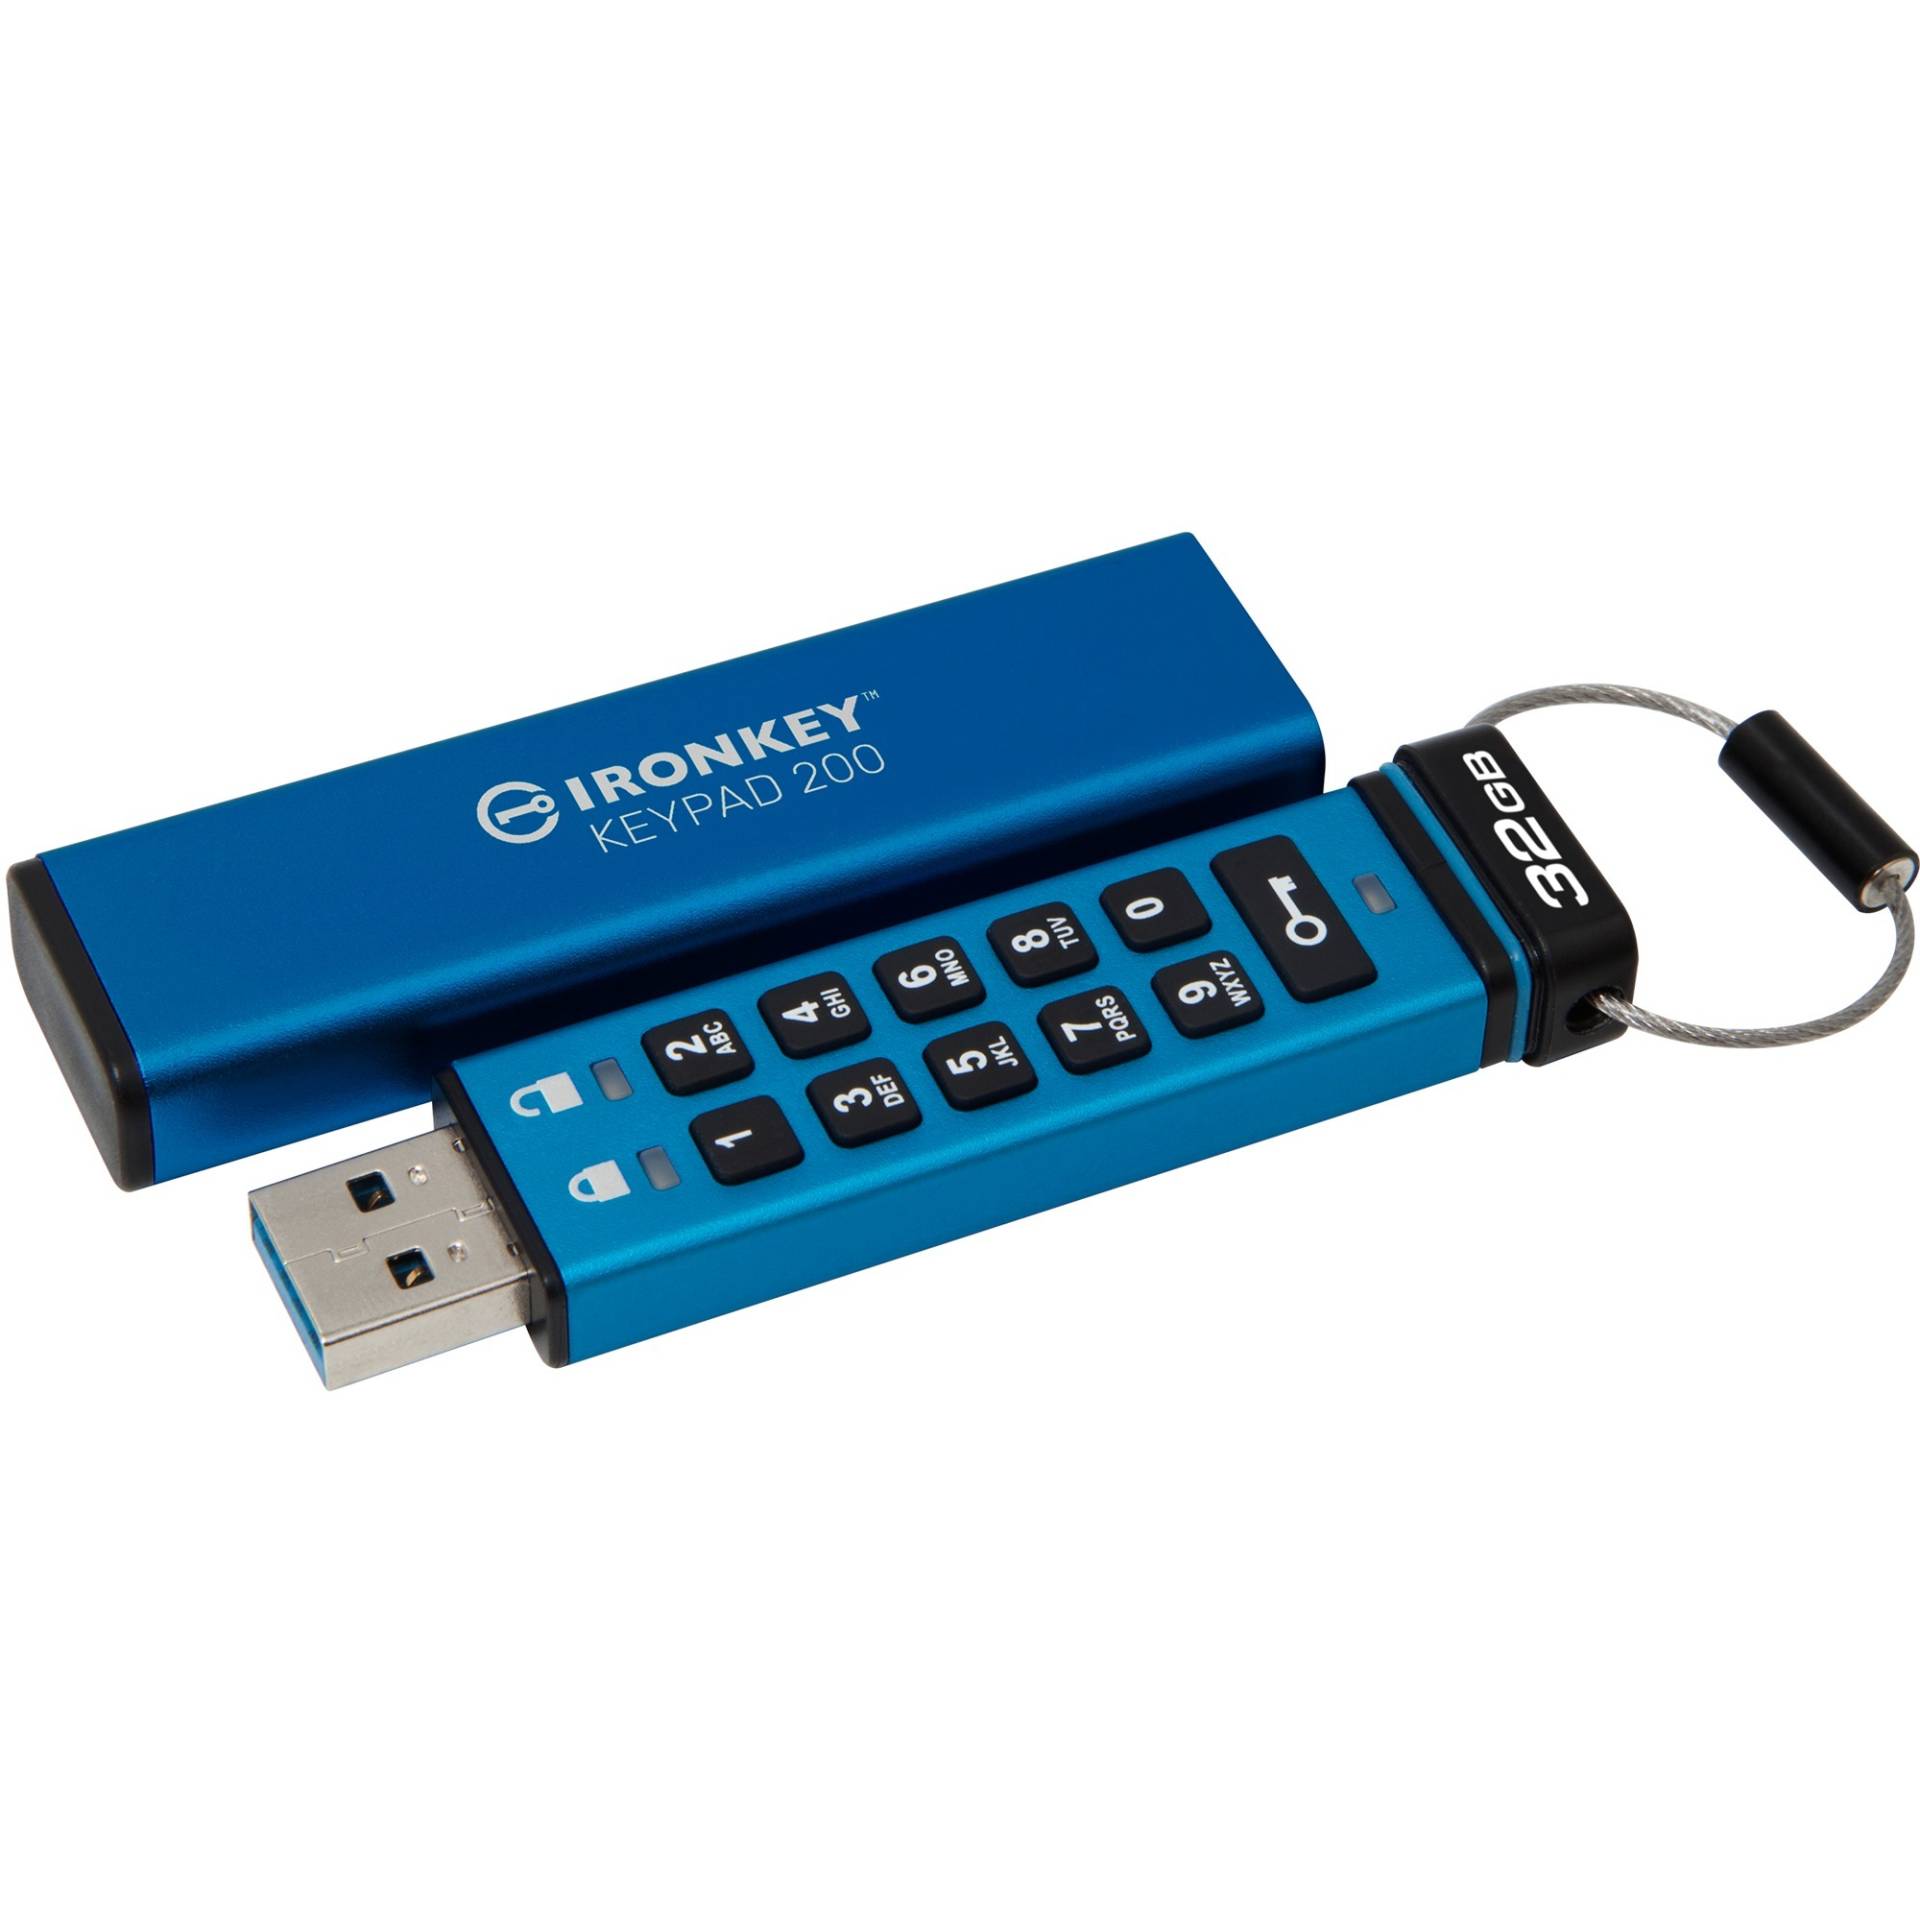 IronKey Keypad 200 32 GB, USB-Stick von Kingston